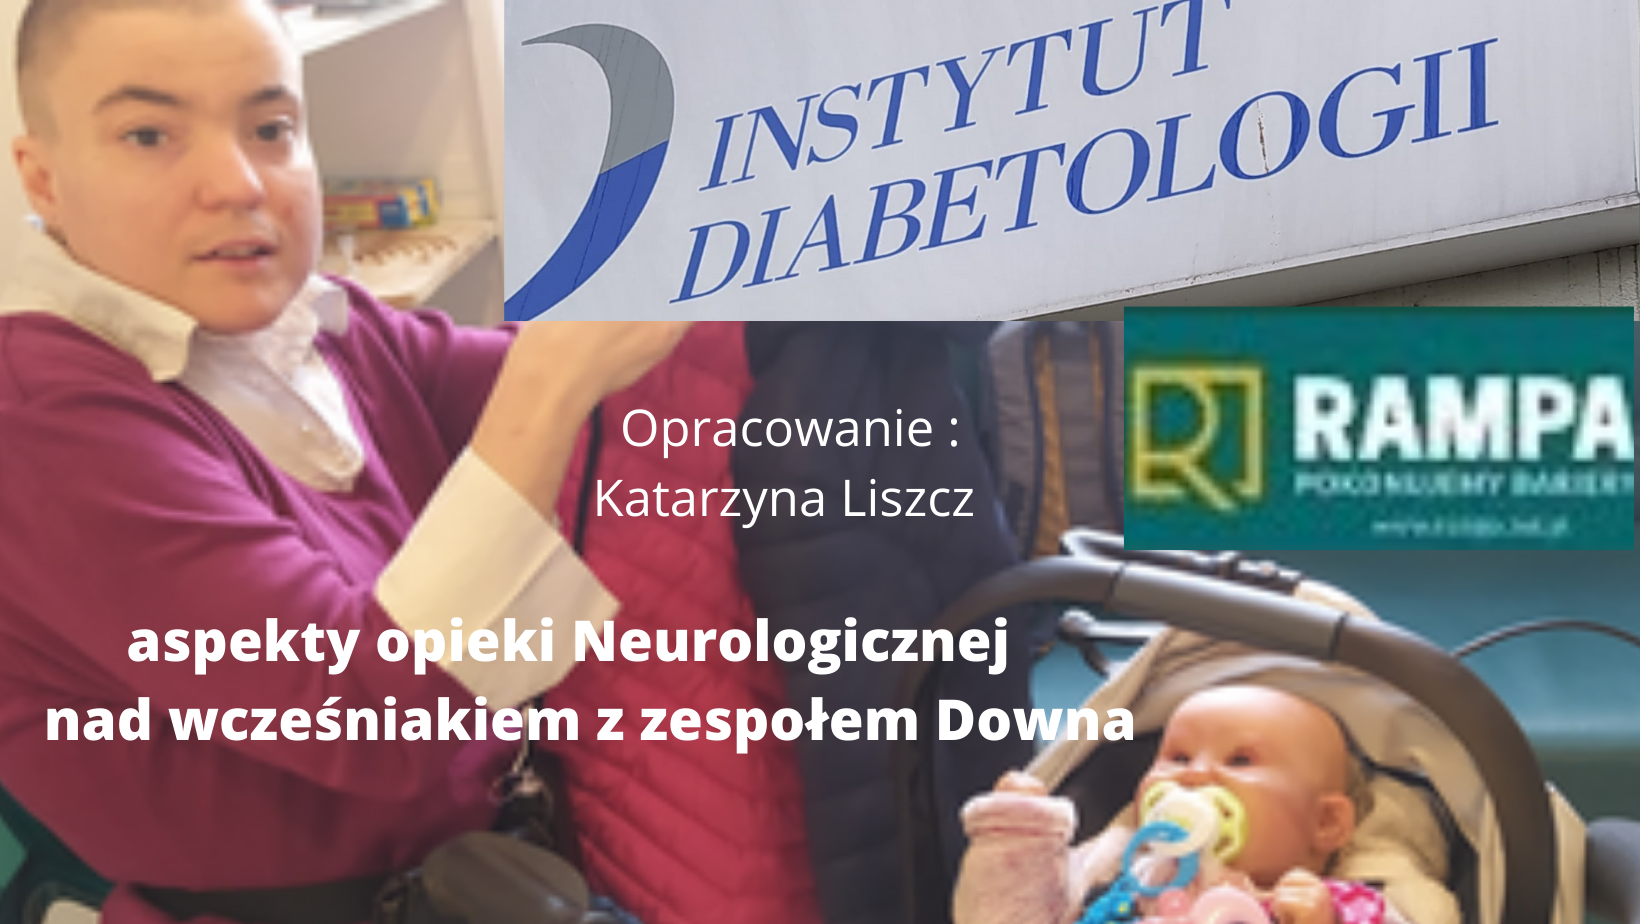 Katarzyna w trakcie wizyty w Instytucie Diabetologii w Warszawie